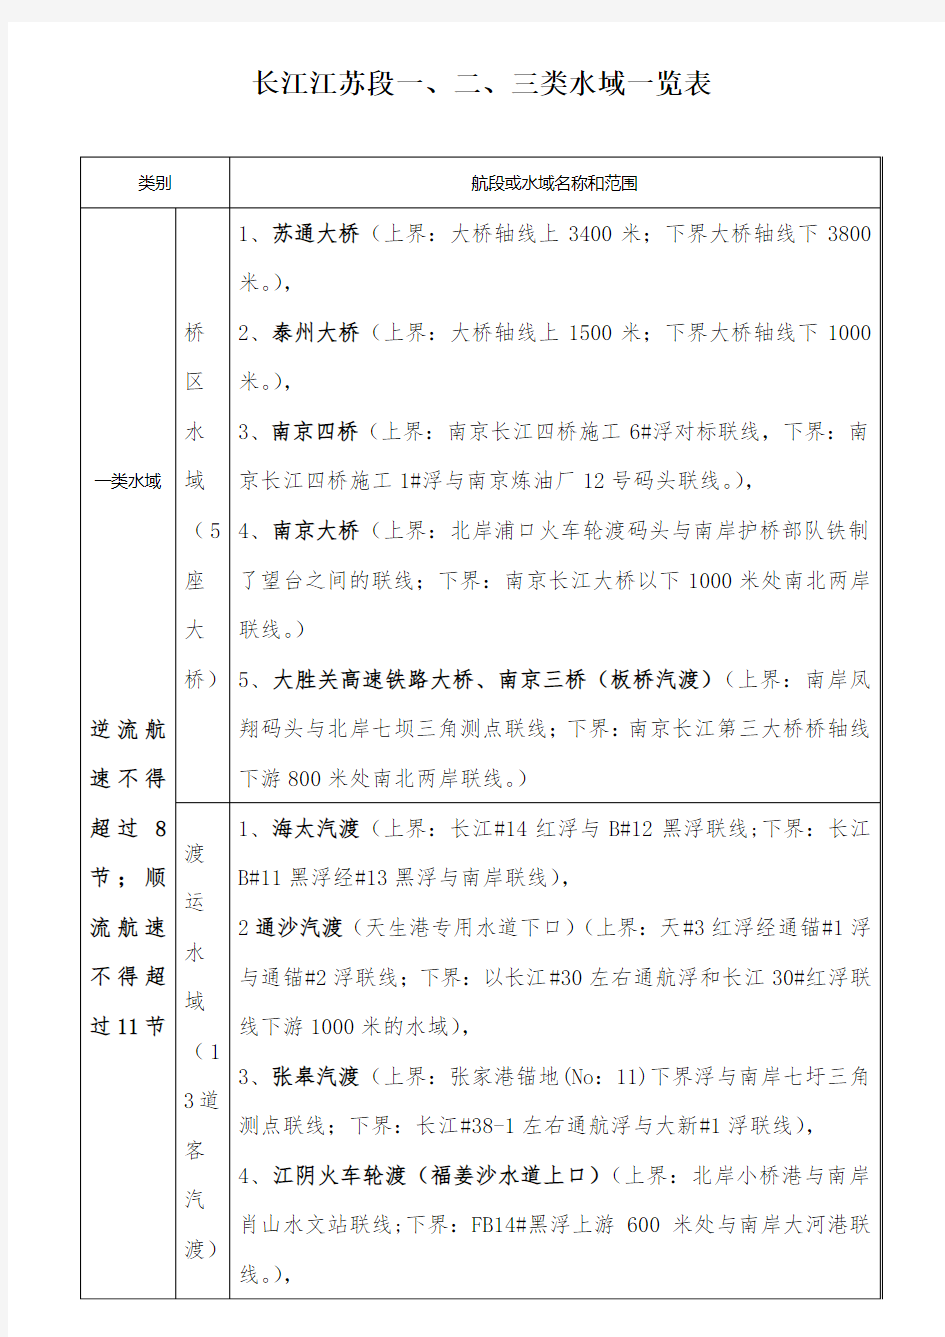 长江江苏段船舶最高航速限制情况一览表